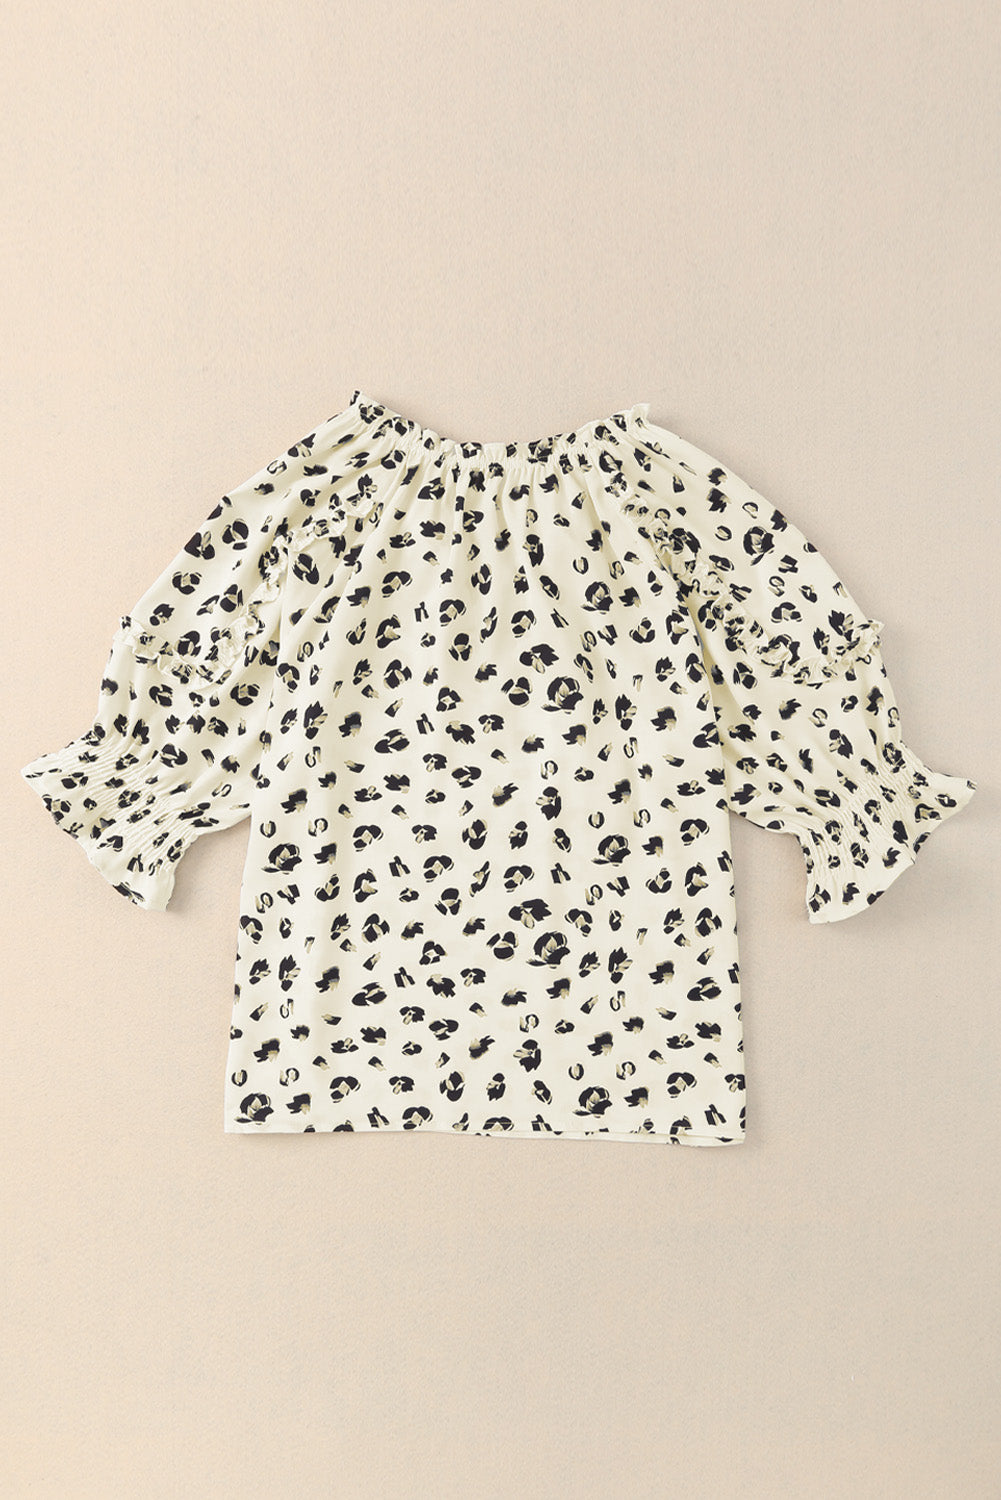 Bež bluza z leopardjim potiskom in naborki s pol rokavi s kravato s kitkami